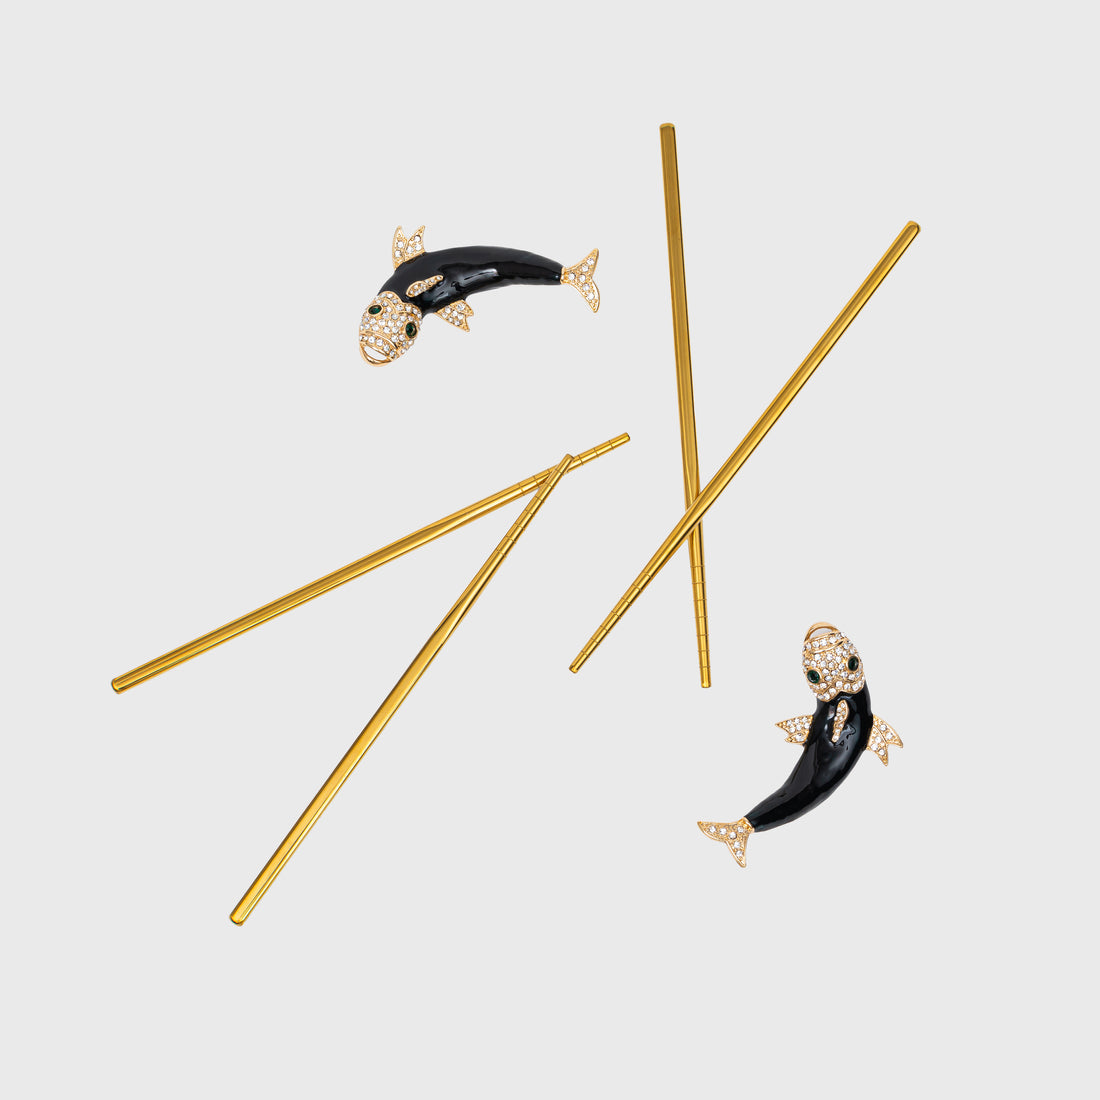 Koi Chopsticks (set Of Four)(3.25" Long X 0.75" High X 2" Width)